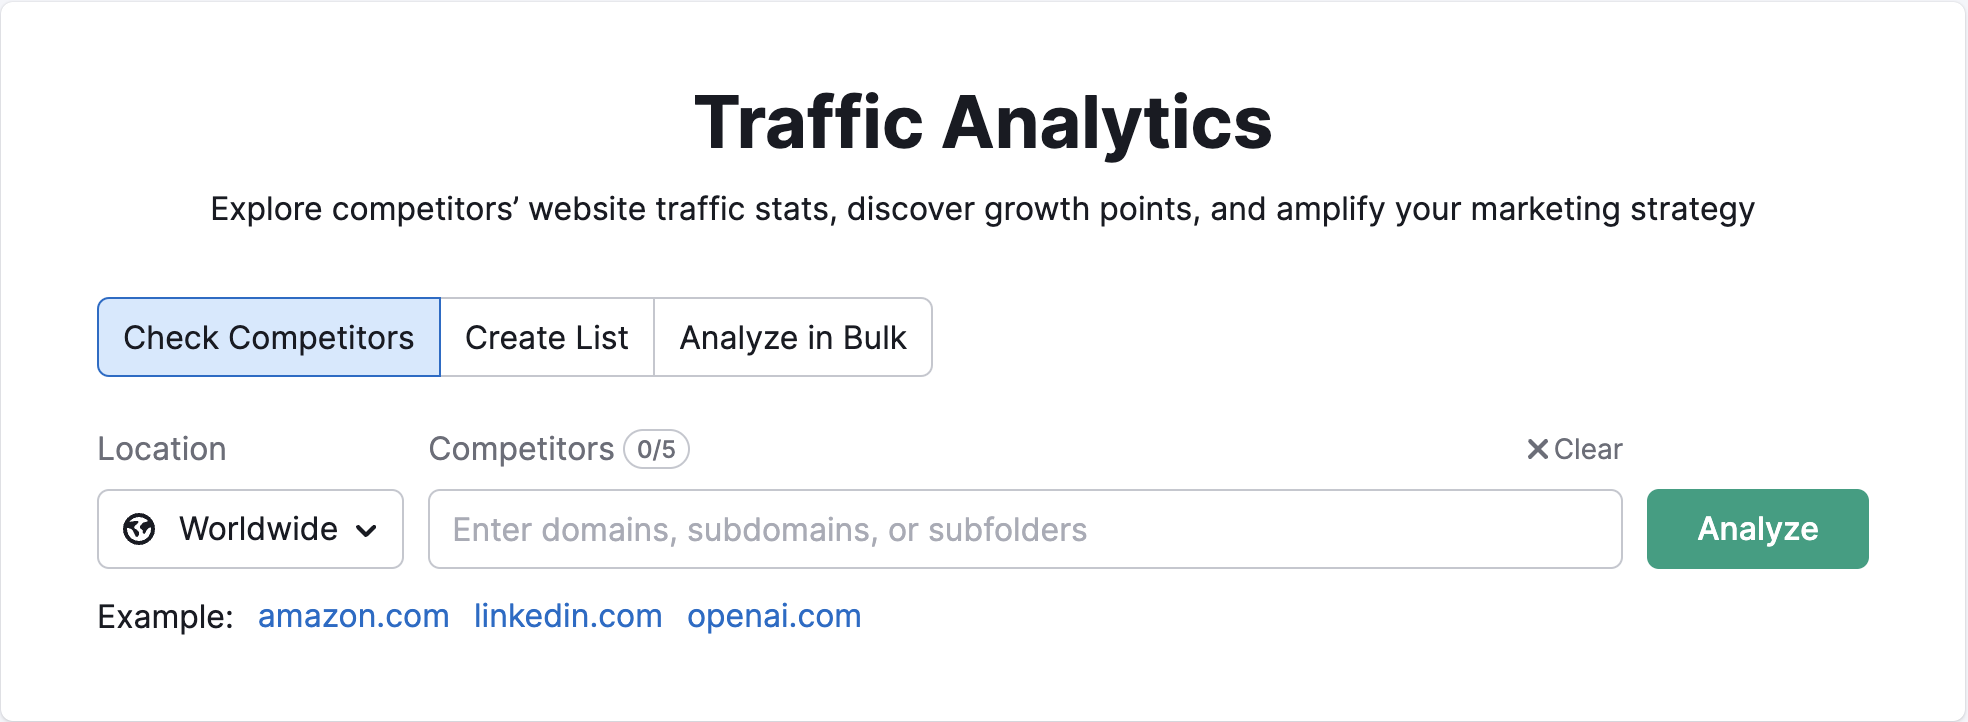 Startseite von Traffic Analytics in Semrush. Zeigt an, wo Sie die Domain des Mitbewerbers eingeben und den Standort auswählen müssen. 